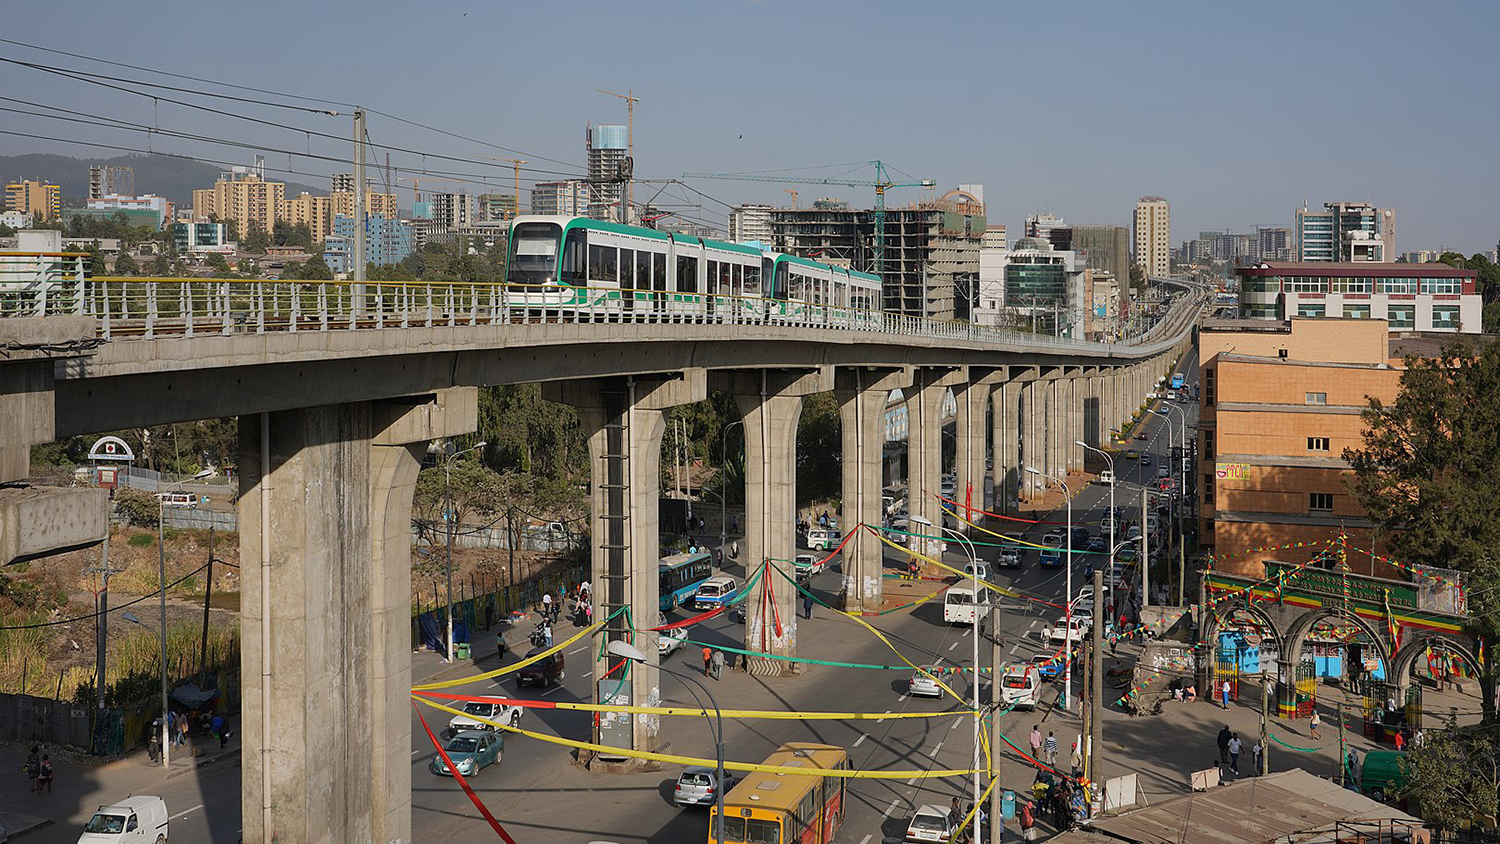 Addis Ababa tram